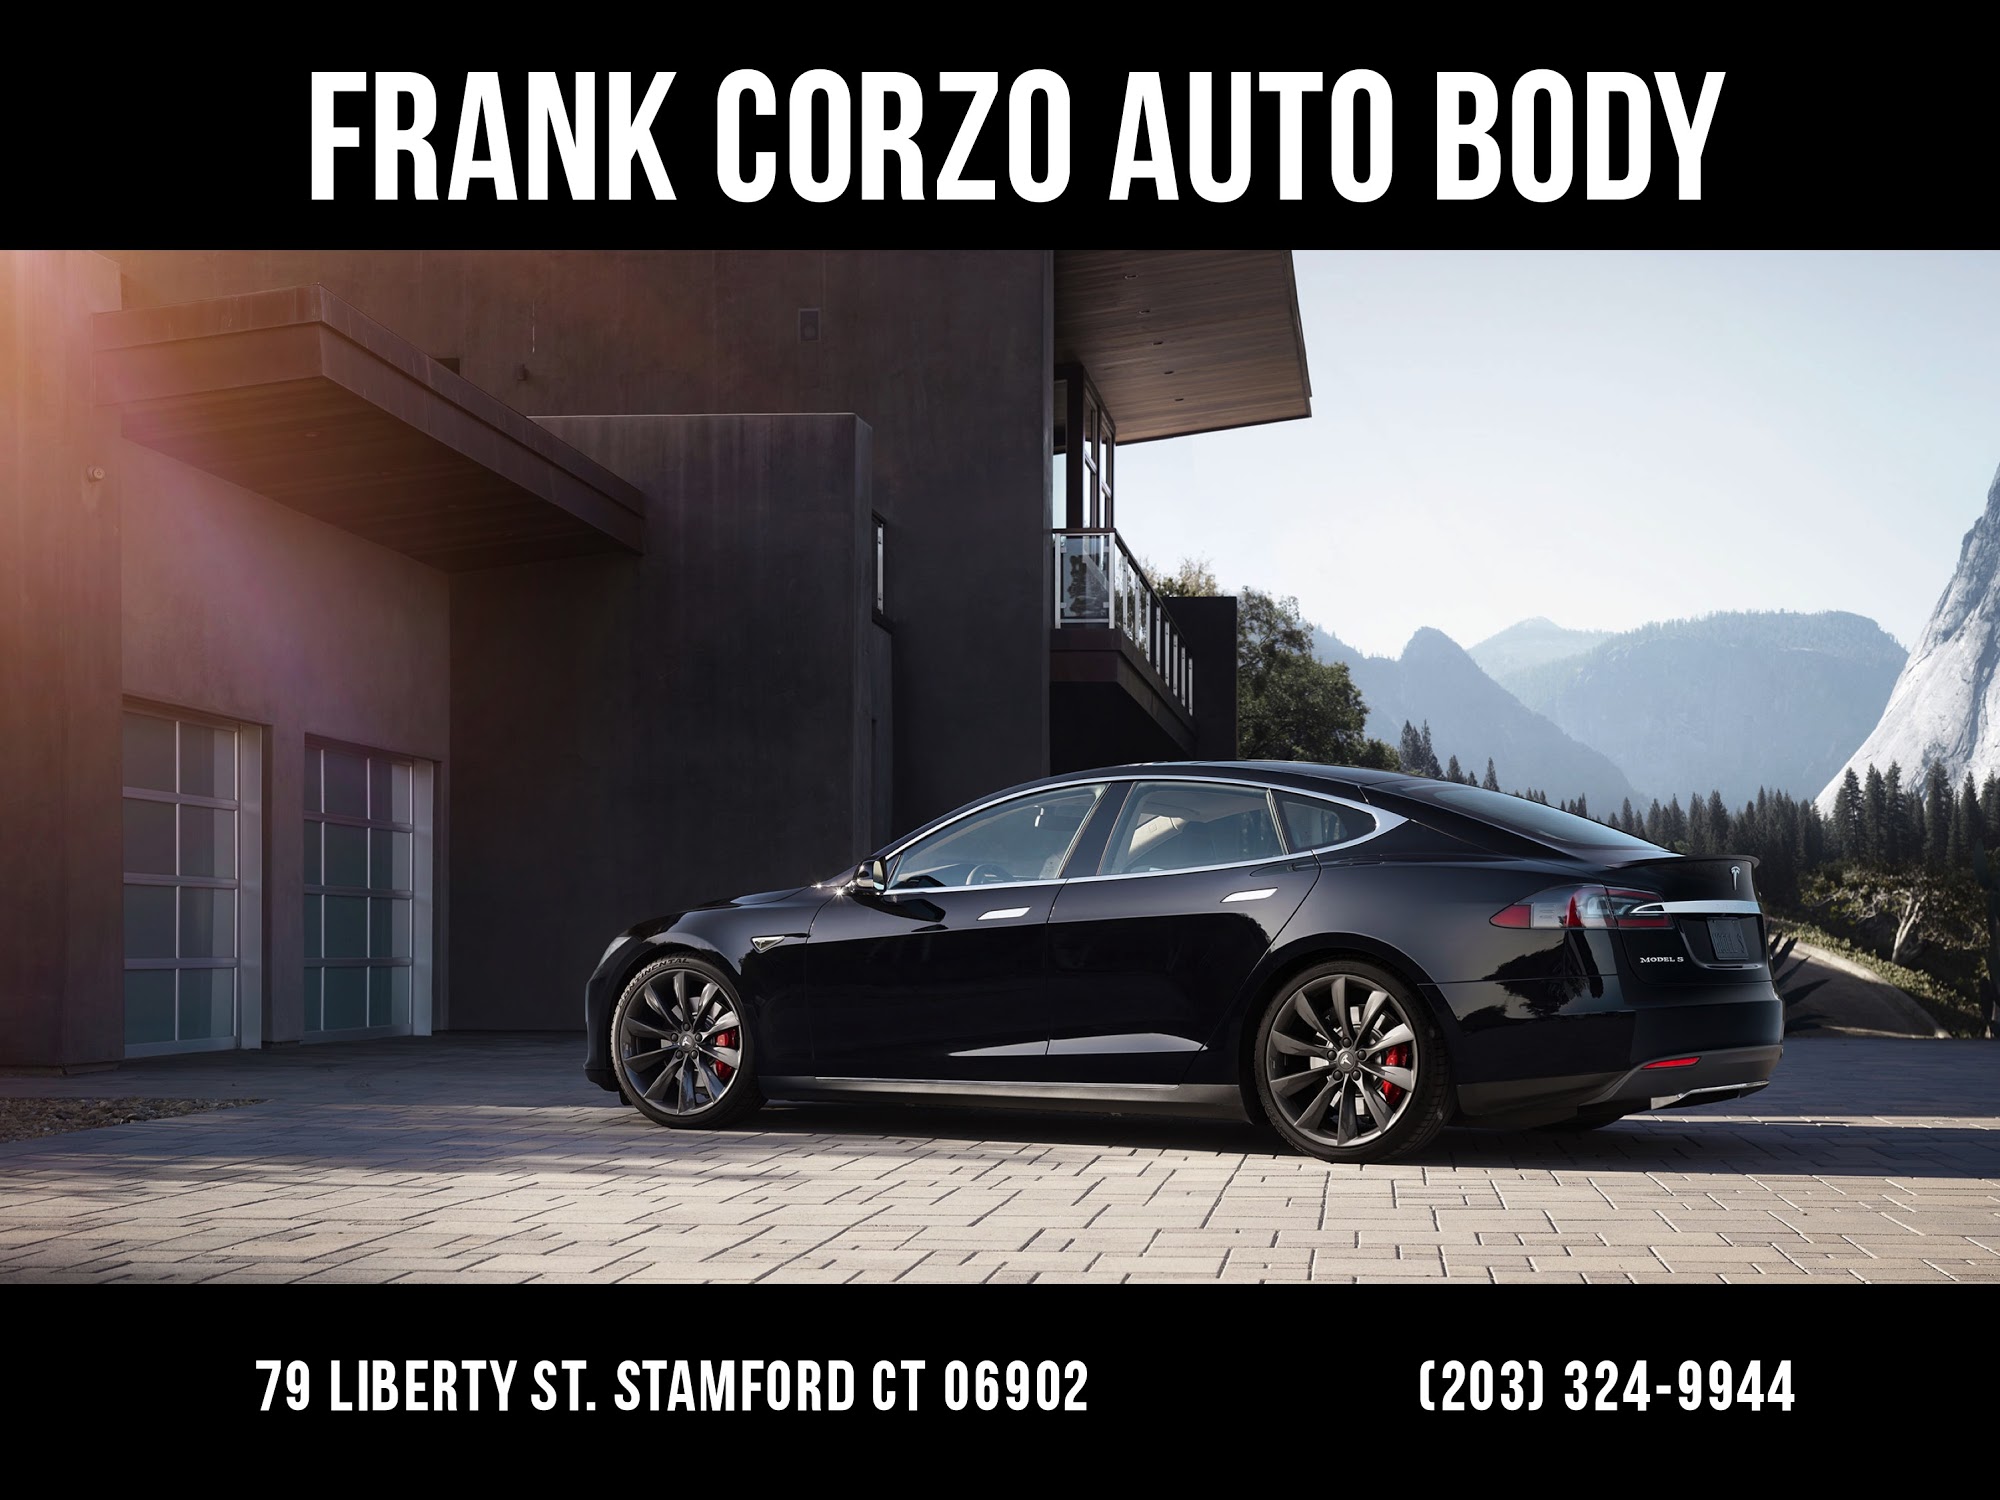 Frank Corzo Auto Body